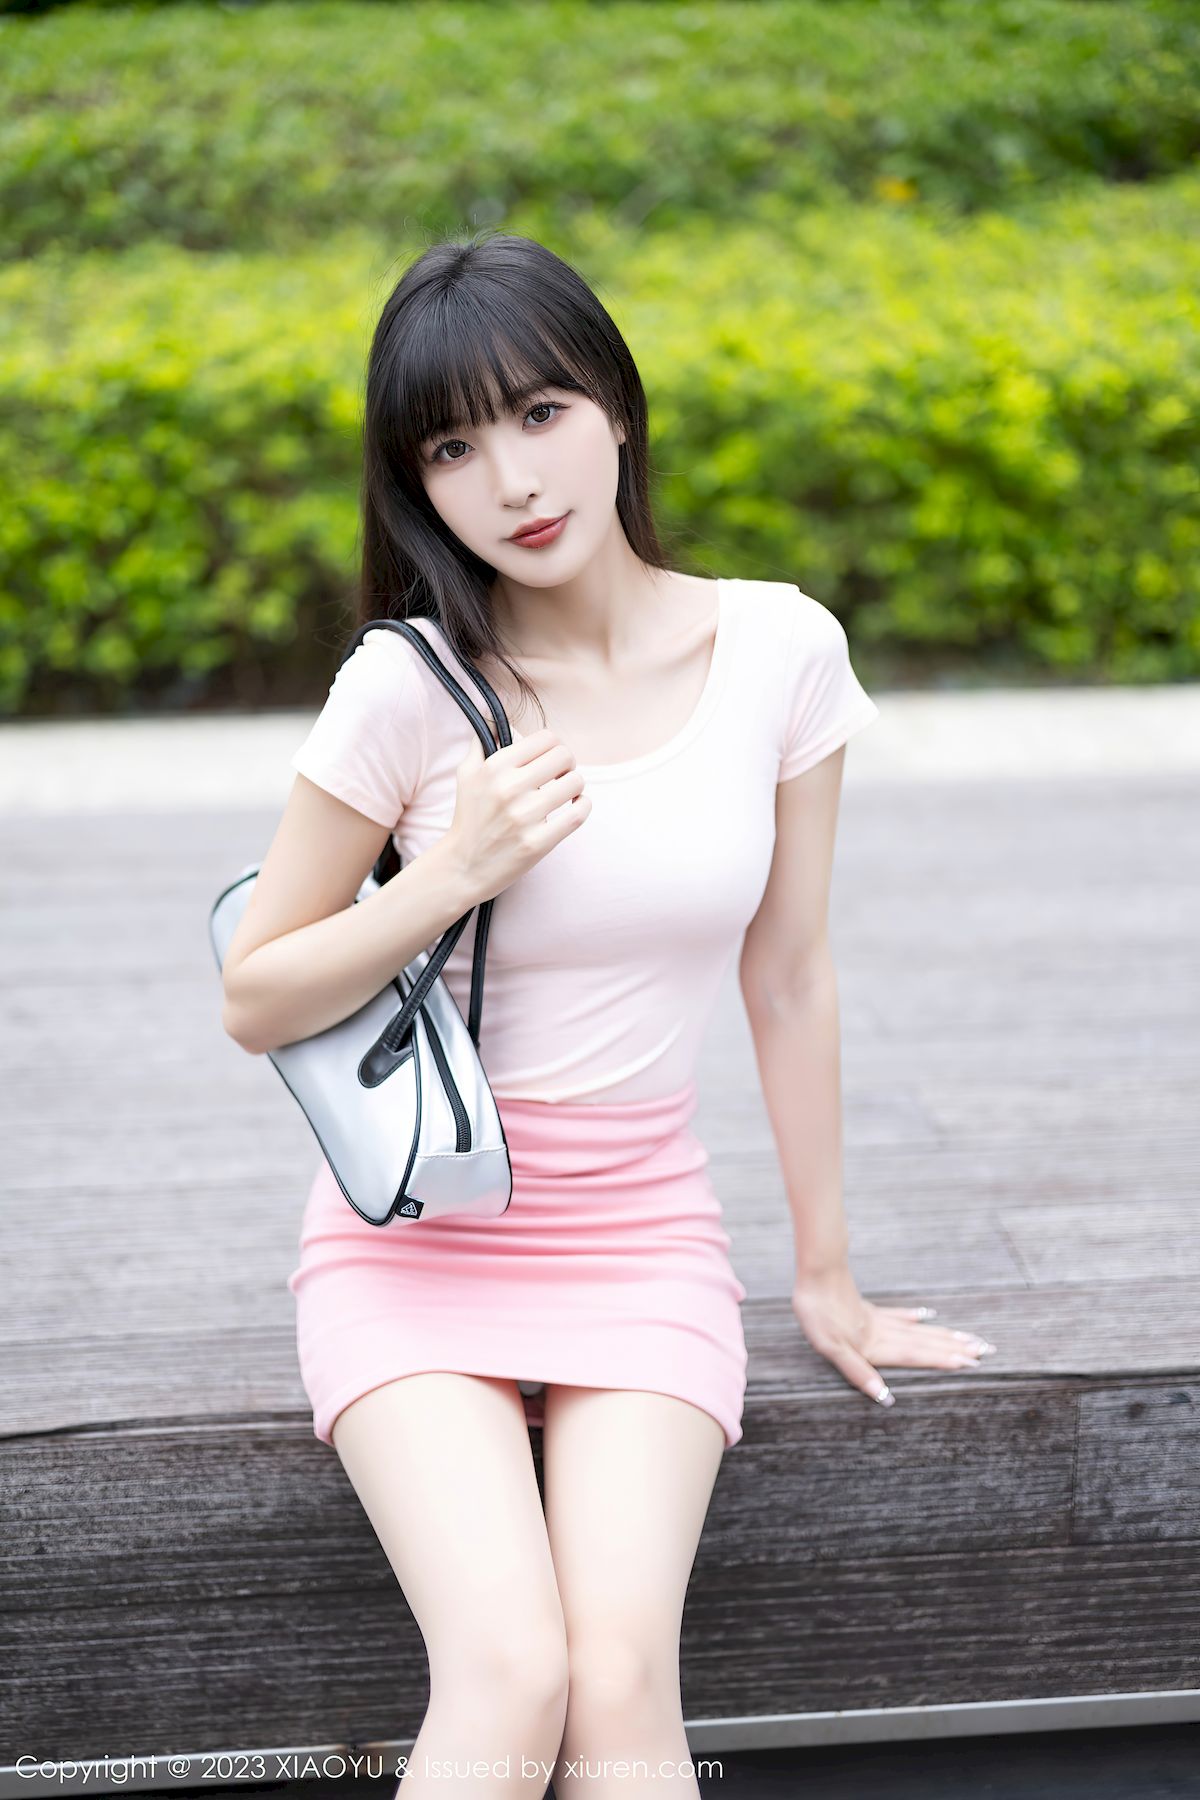 语画界美女模特林星阑浅粉色上衣搭配粉色短裙性感写真